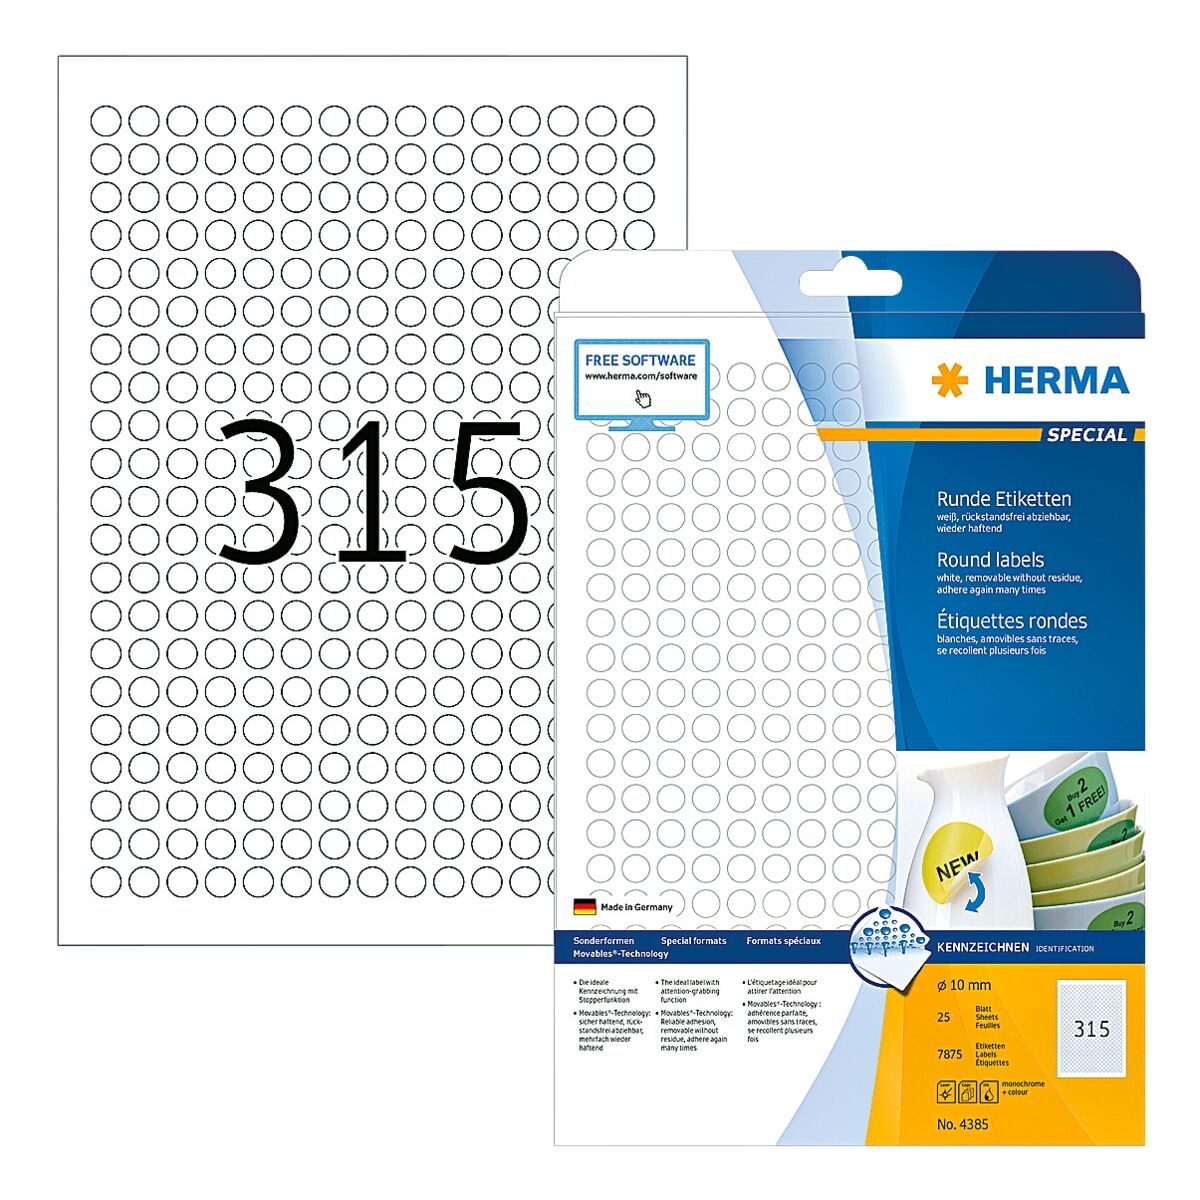 Herma 7875er-Pack ablsbare Etiketten